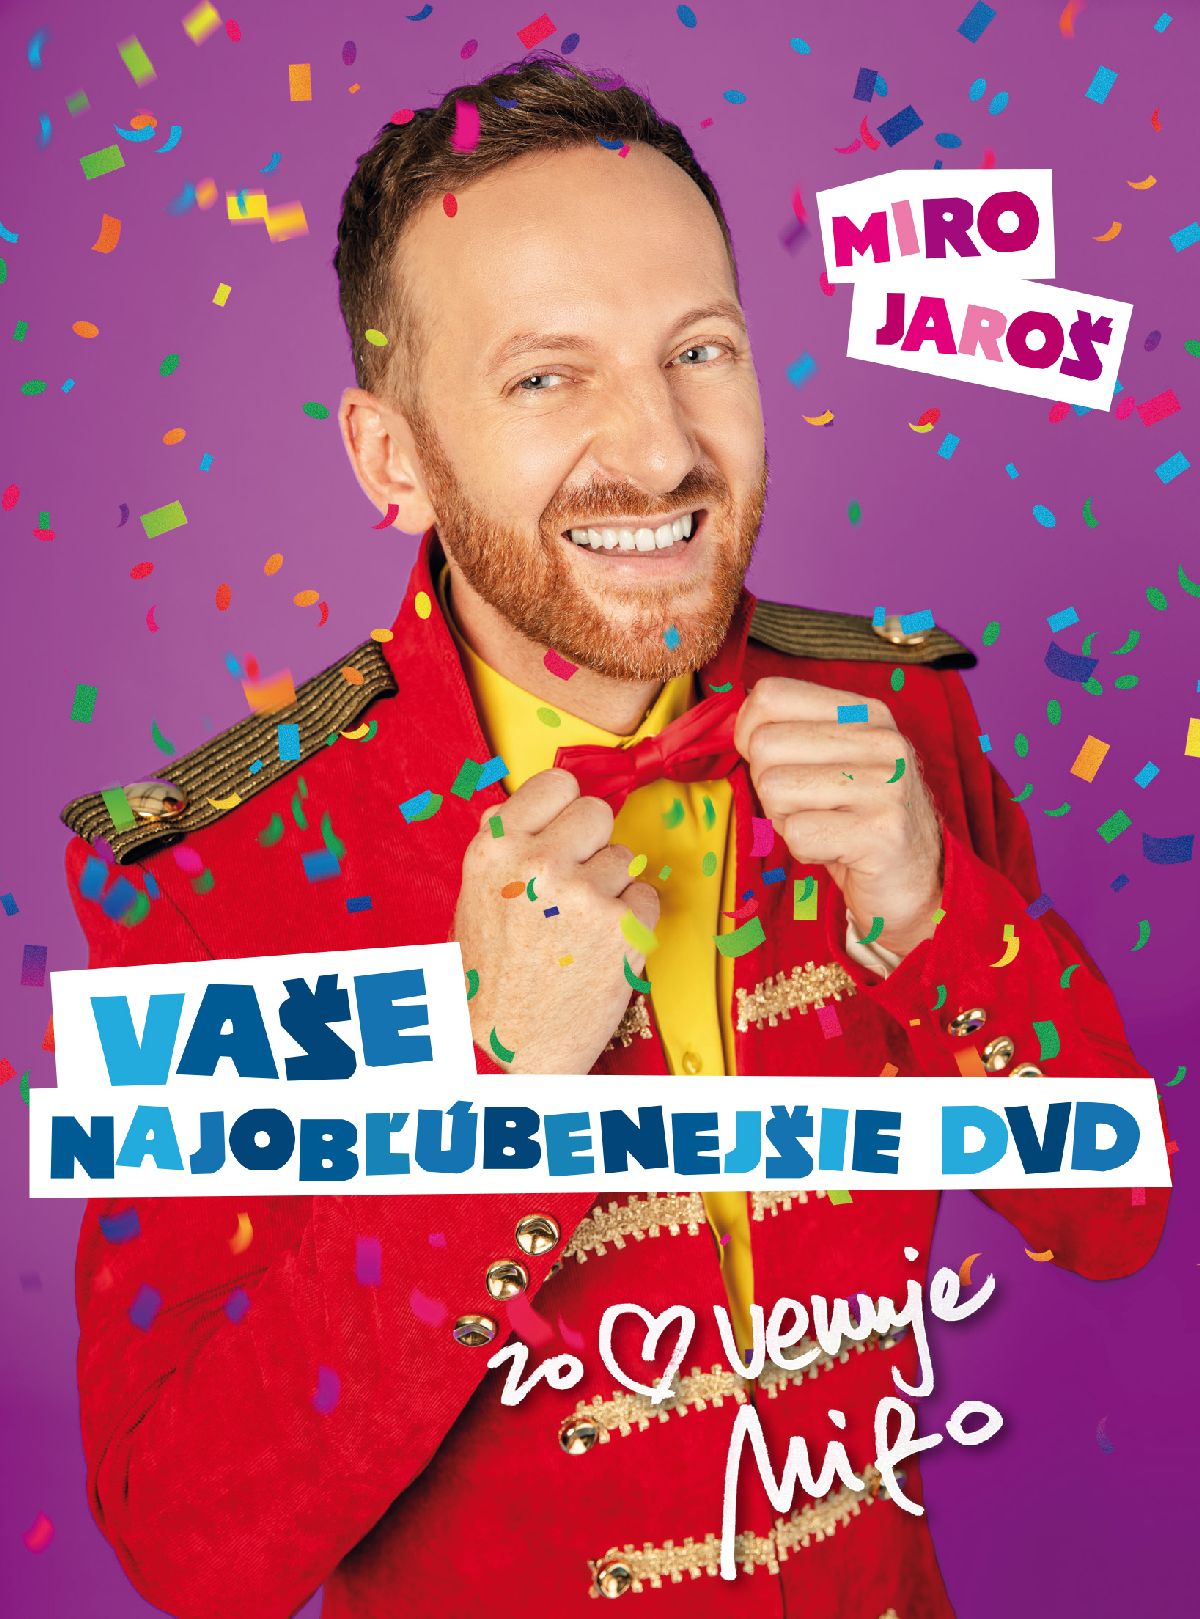 CD Shop - JAROS MIRO VASE NAJOBLUBENEJSIE DVD